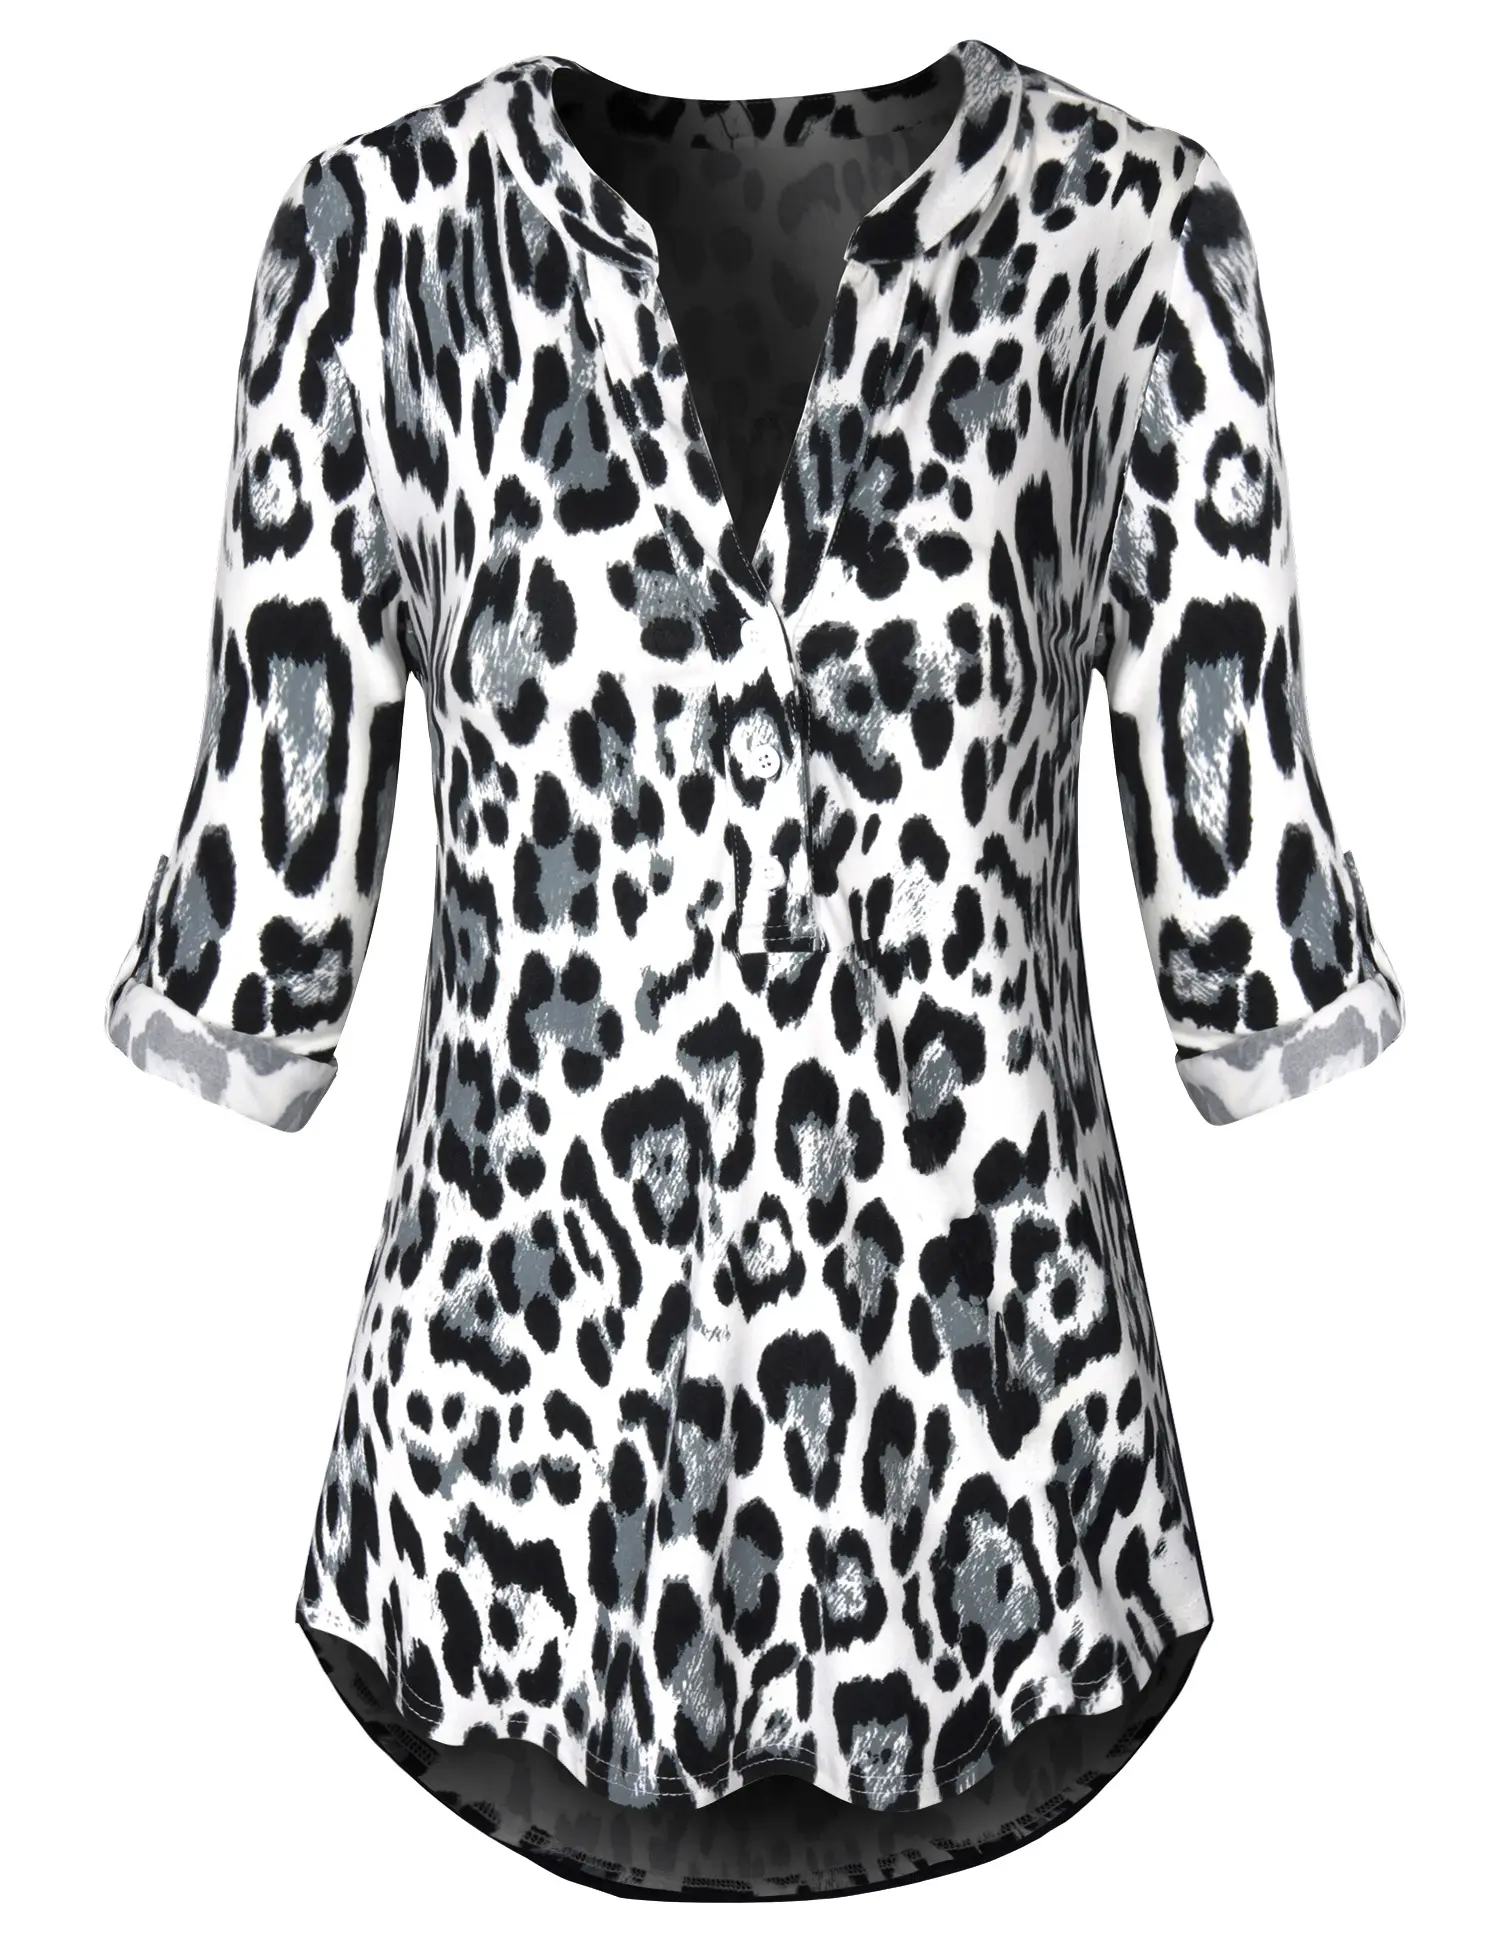 Nuevo estilo de las mujeres Tops muescas cuello en V moda leopardo camisa blusa